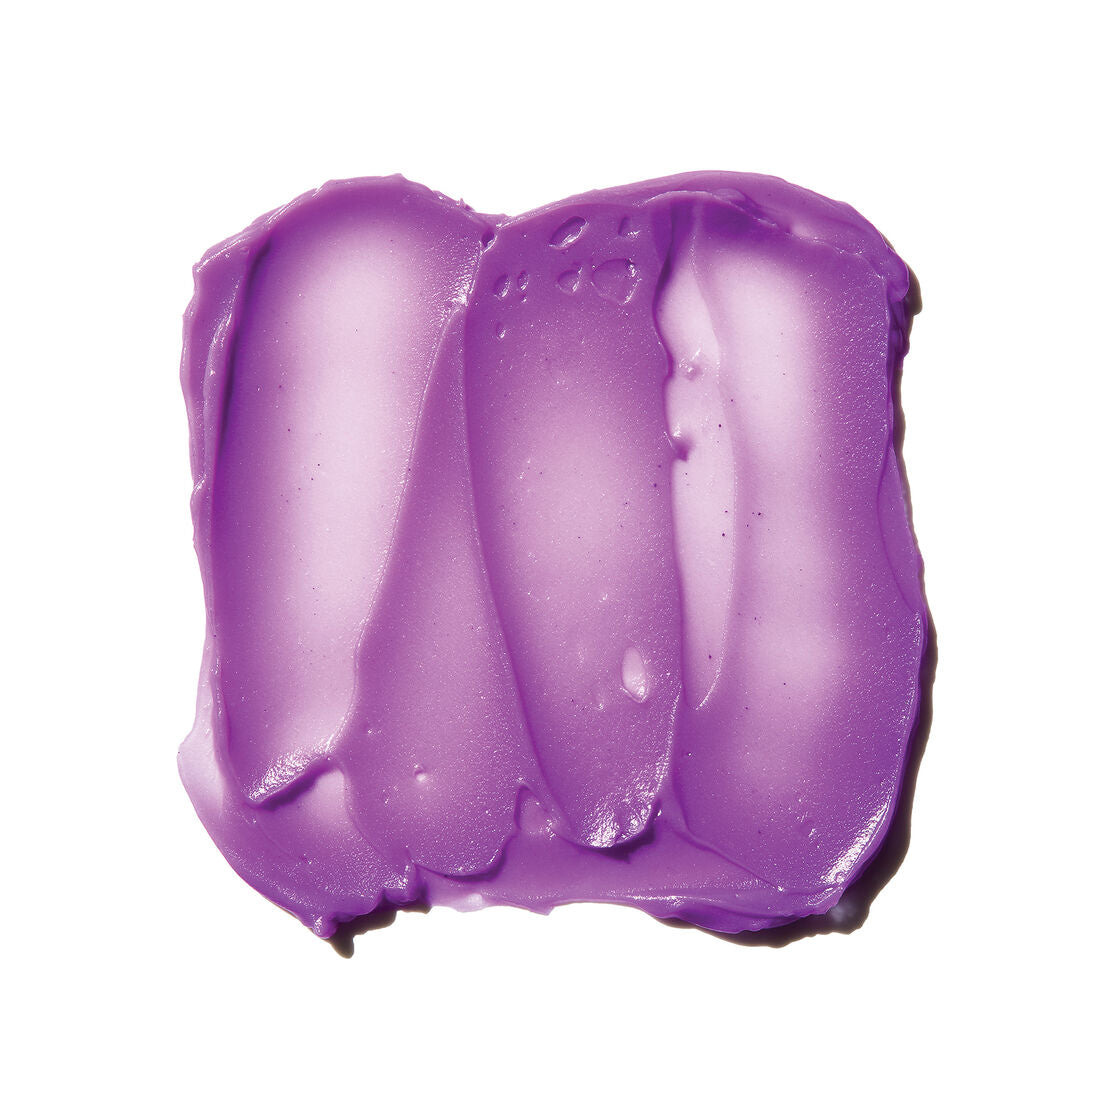 ELF Tone Adjustiong Face Primer Brightening Lavender